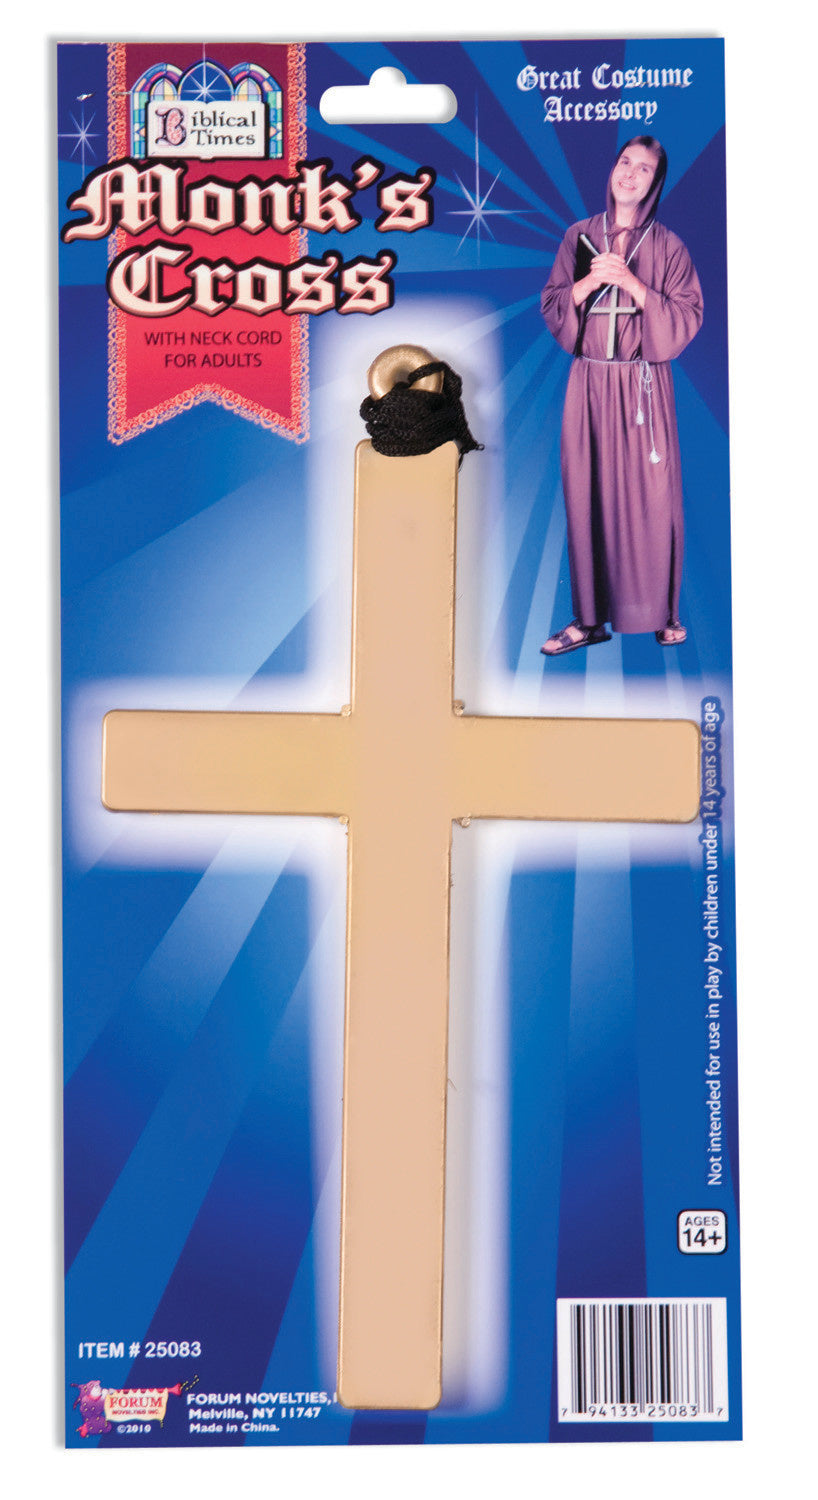 Monk Cross